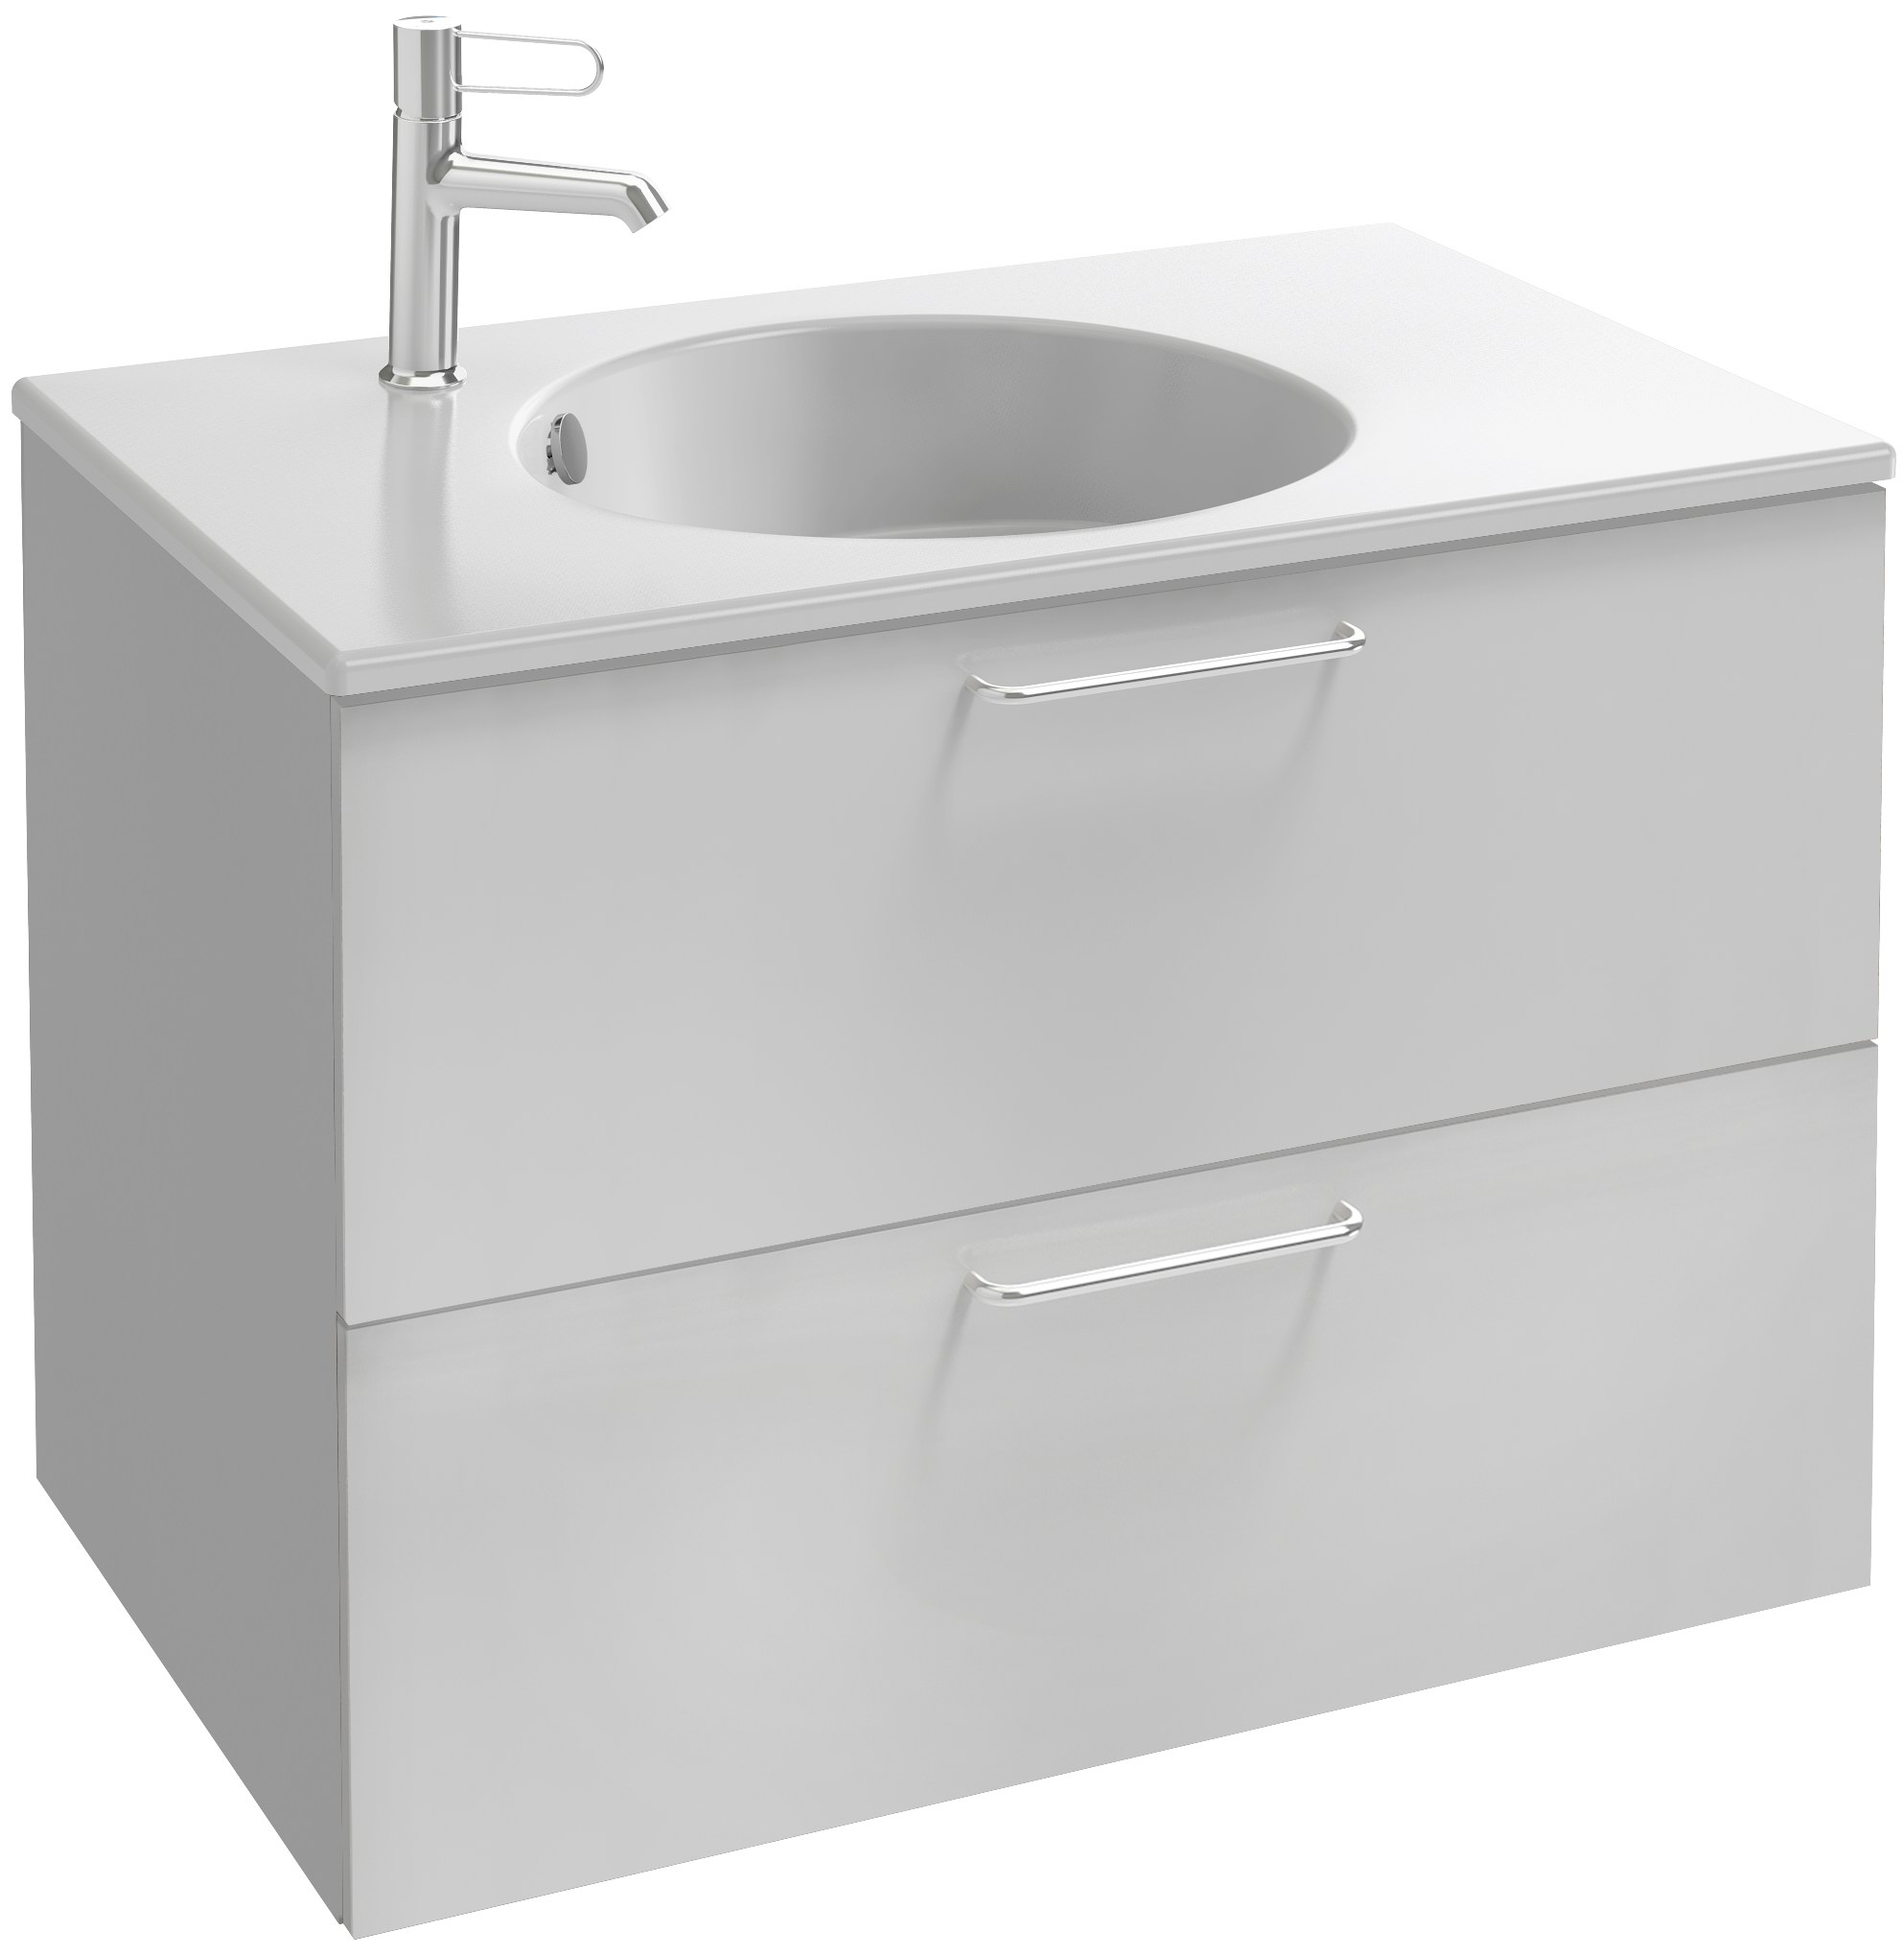 Мебель для ванной комнаты Jacob Delafon EB2522-R5-N18 Odeon Rive Gauche 80, 2 ящика, меламин, белая, ручки хром, цвет белый - фото 8